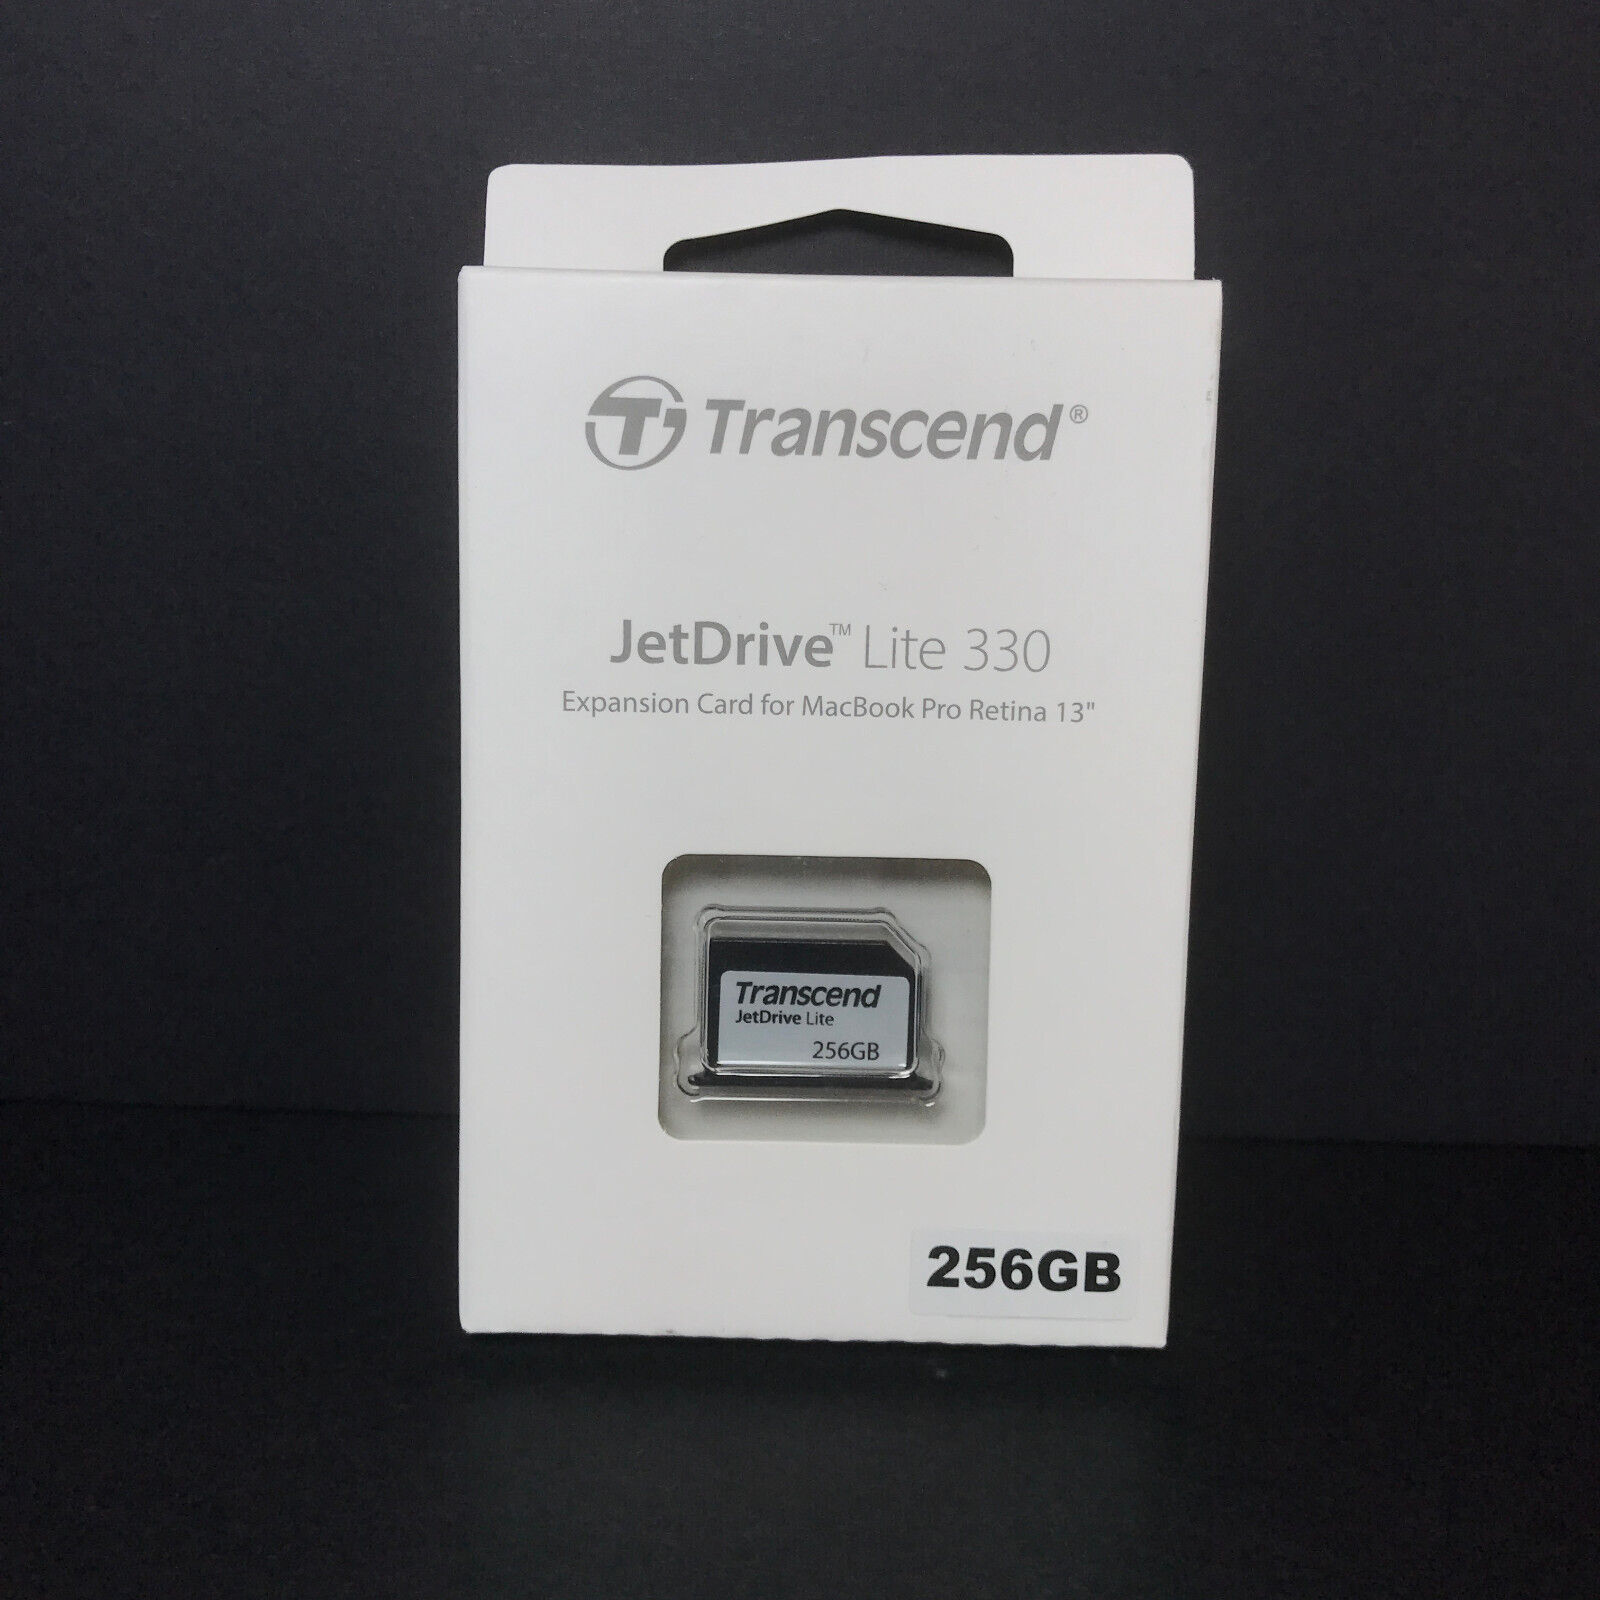 Transcend 256GB JetDrive Lite 330 Expansion Card for 13